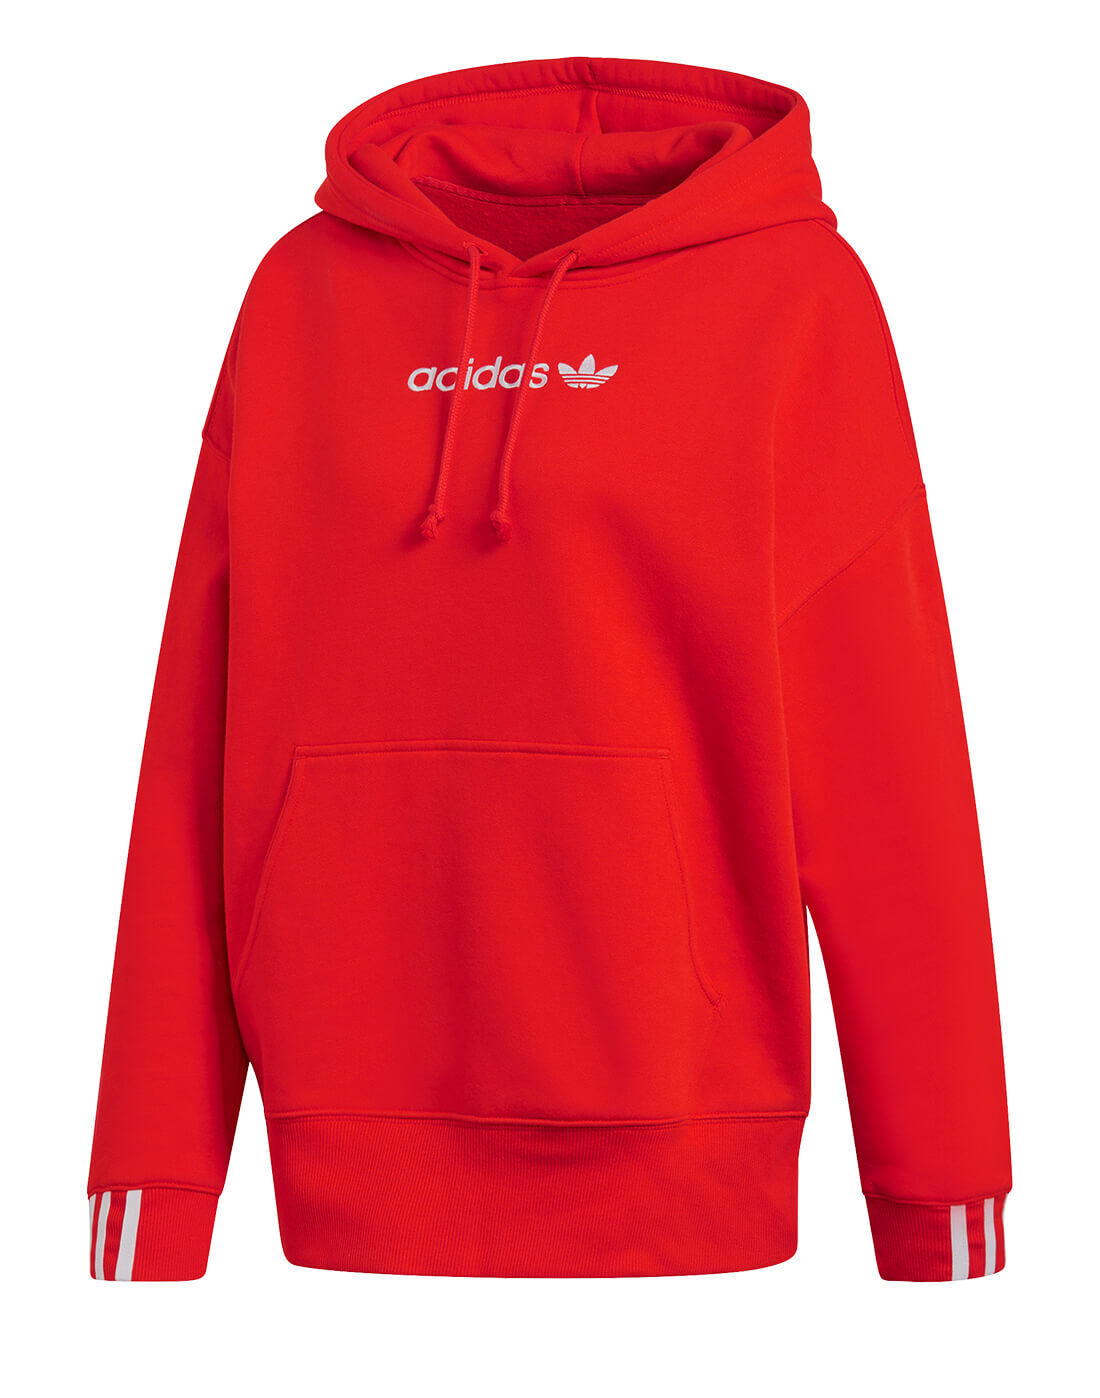 adidas coeeze sweatshirt red